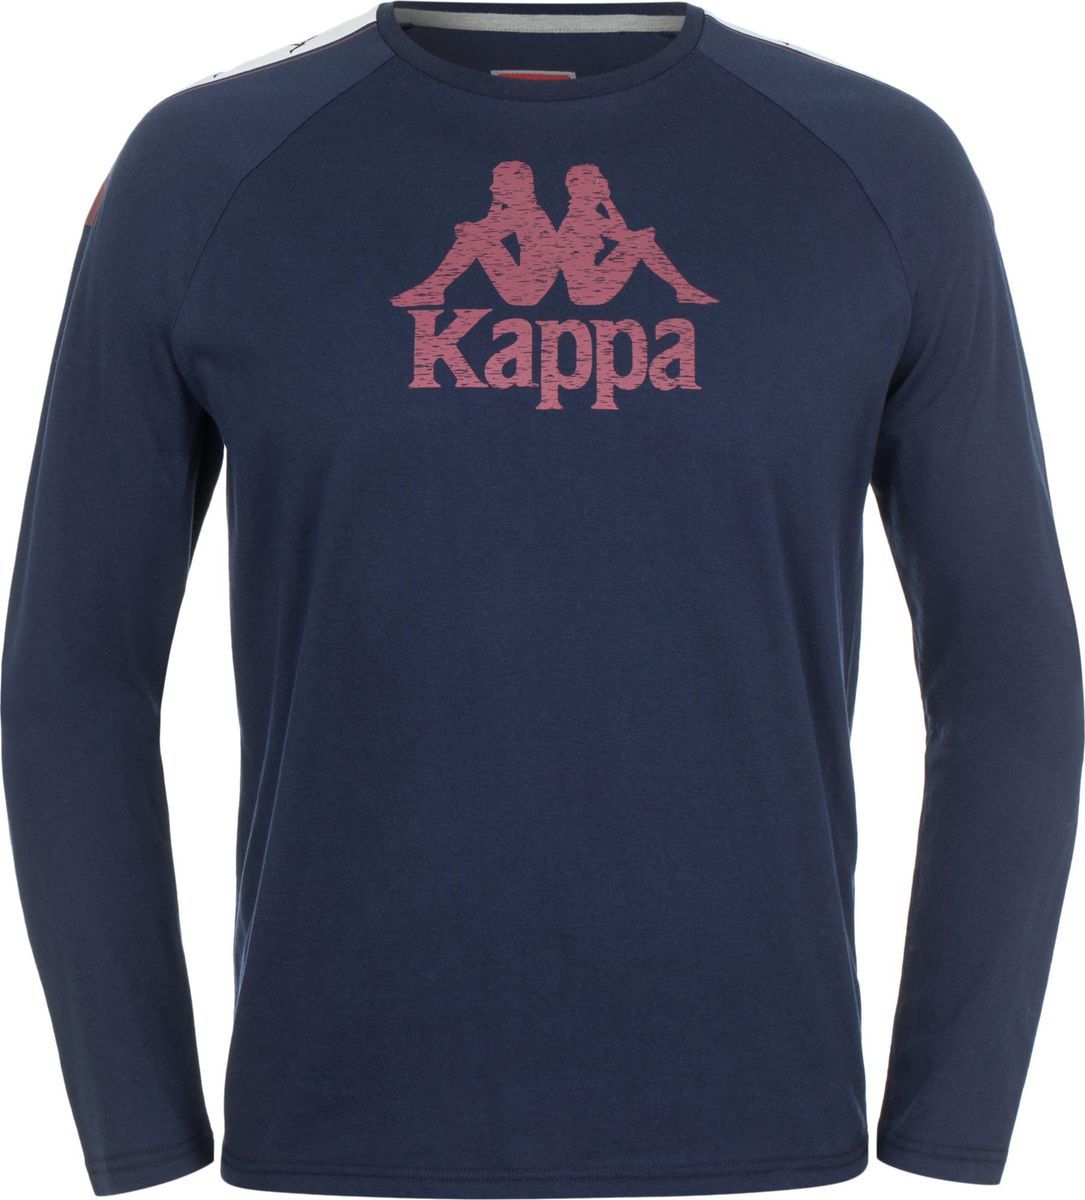   Kappa Men's Jumper, : -. 303SZD0-X1Z.  M (48)